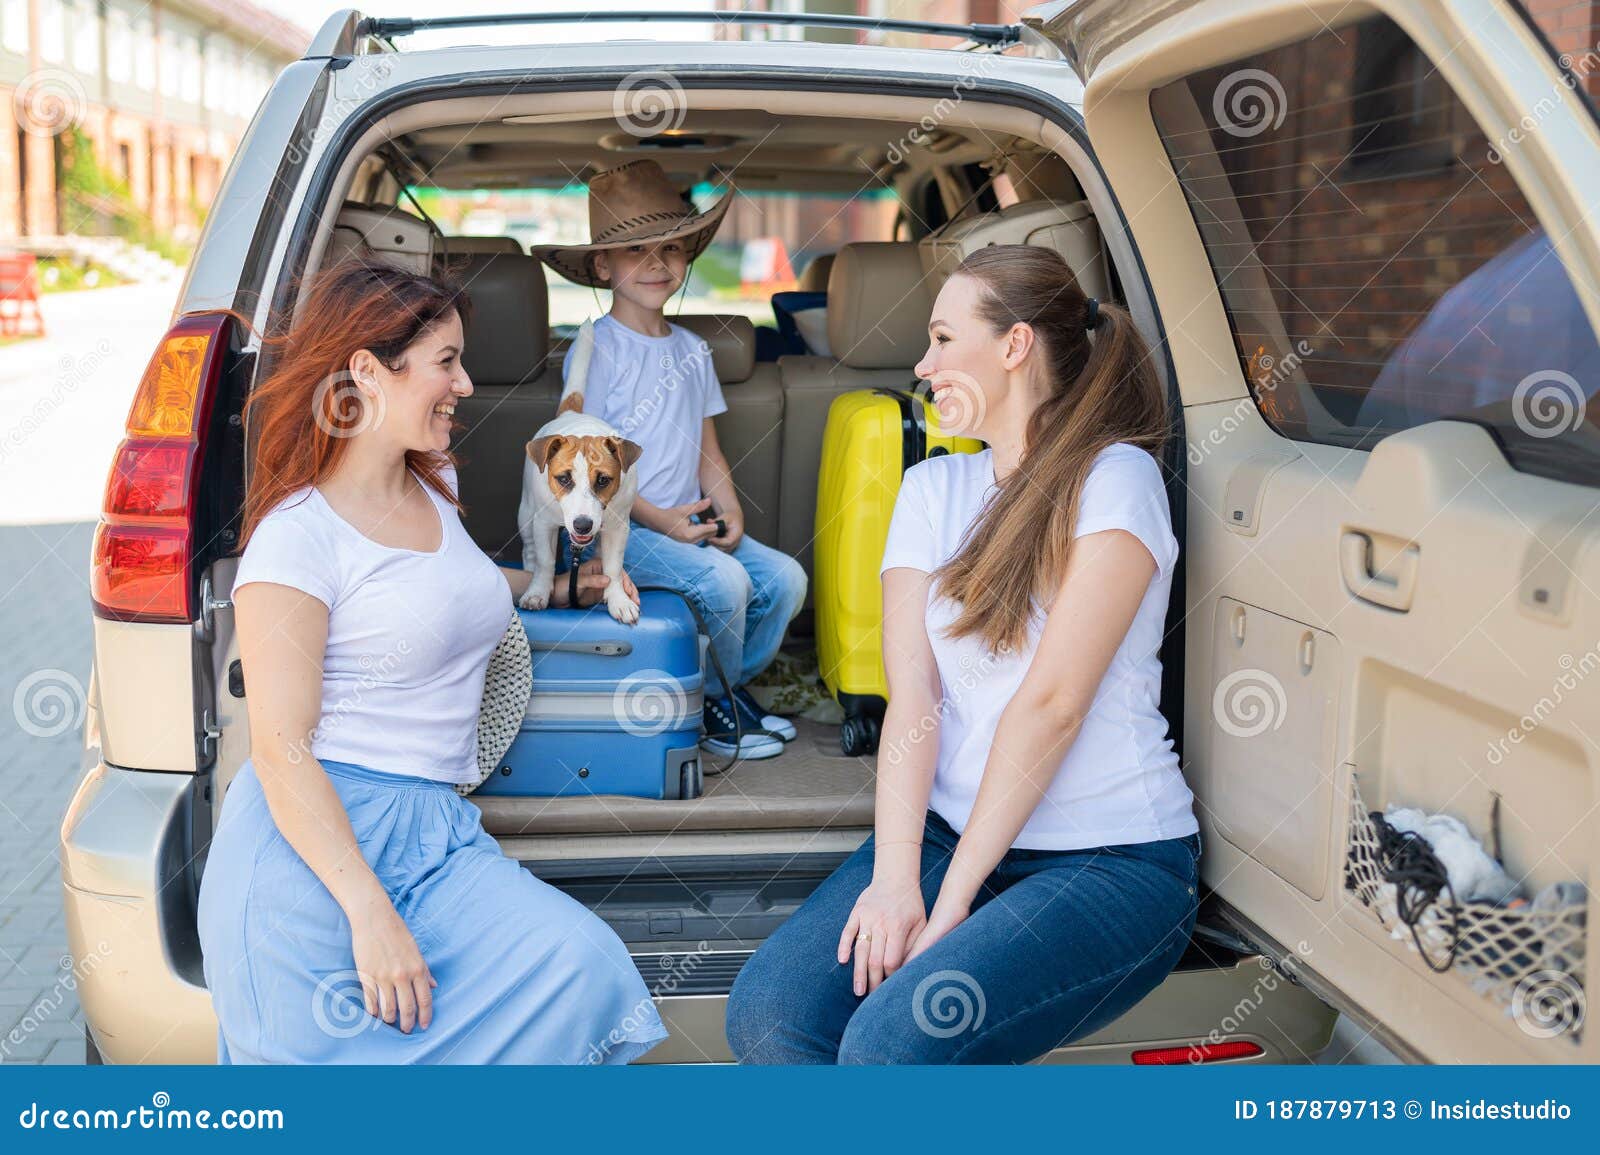 Lesbian Sex In A Car